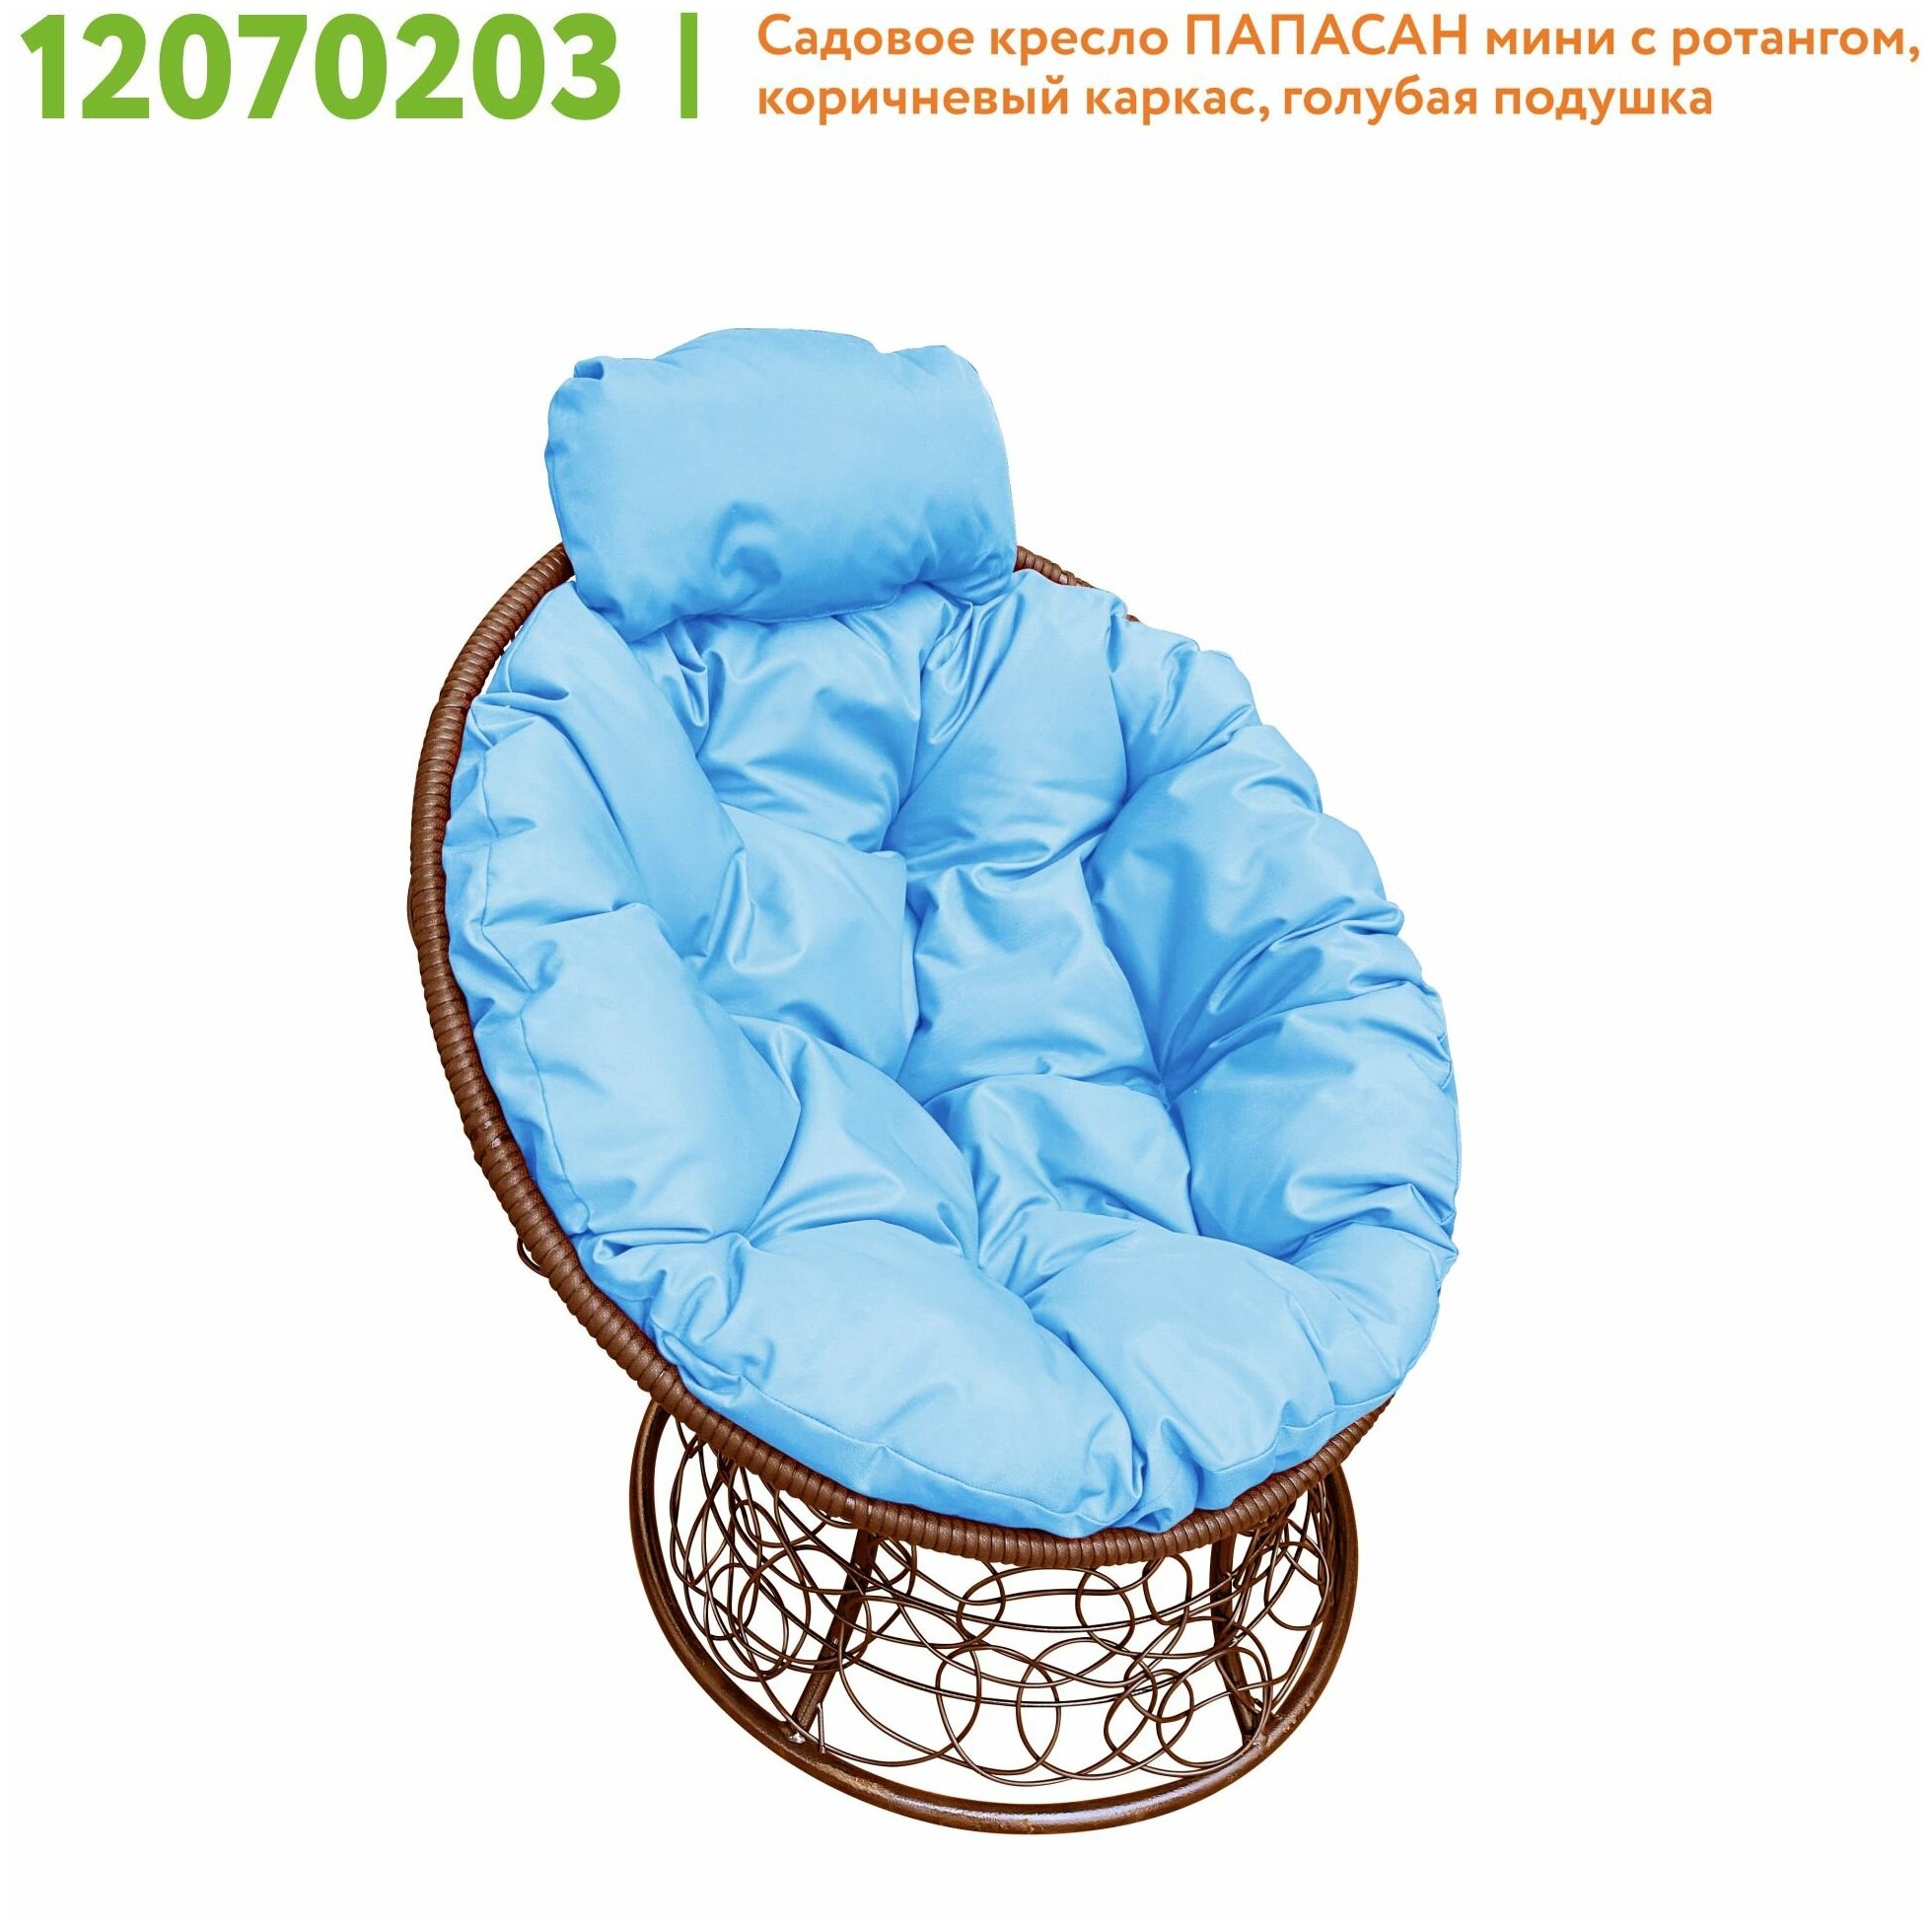 Кресло M-Group папасан мини ротанг коричневое, голубая подушка - фотография № 5